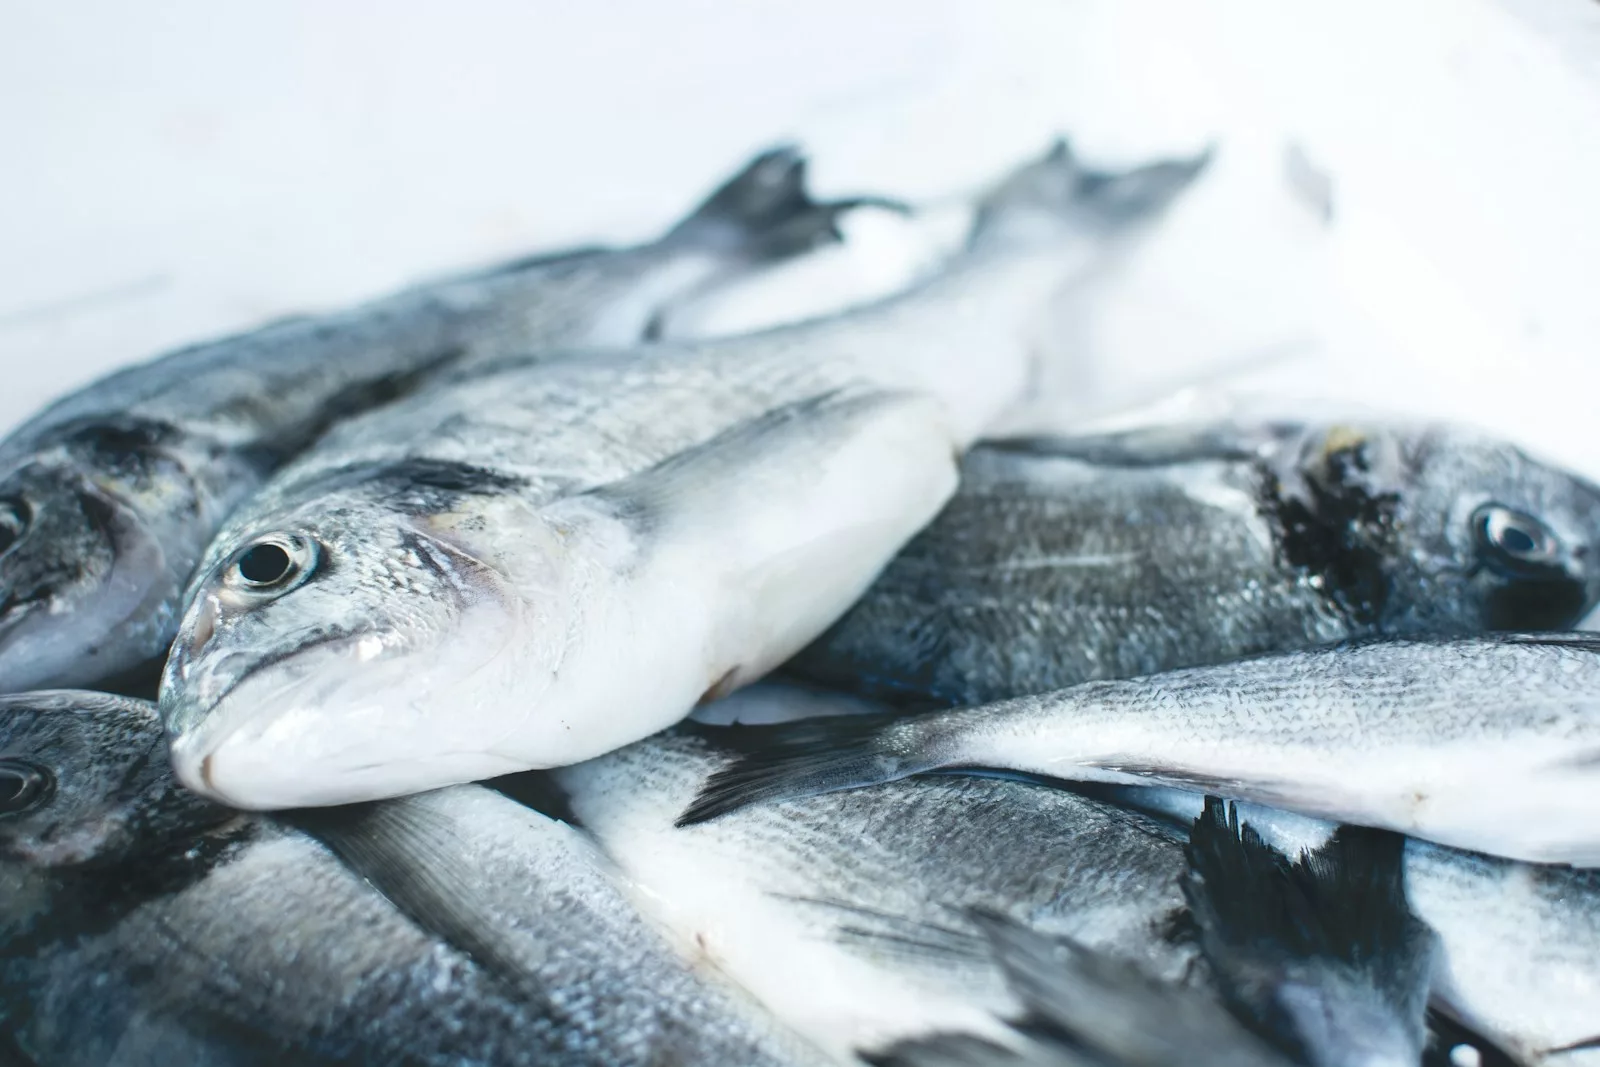 Comment assurer la consommation durable de poisson ?